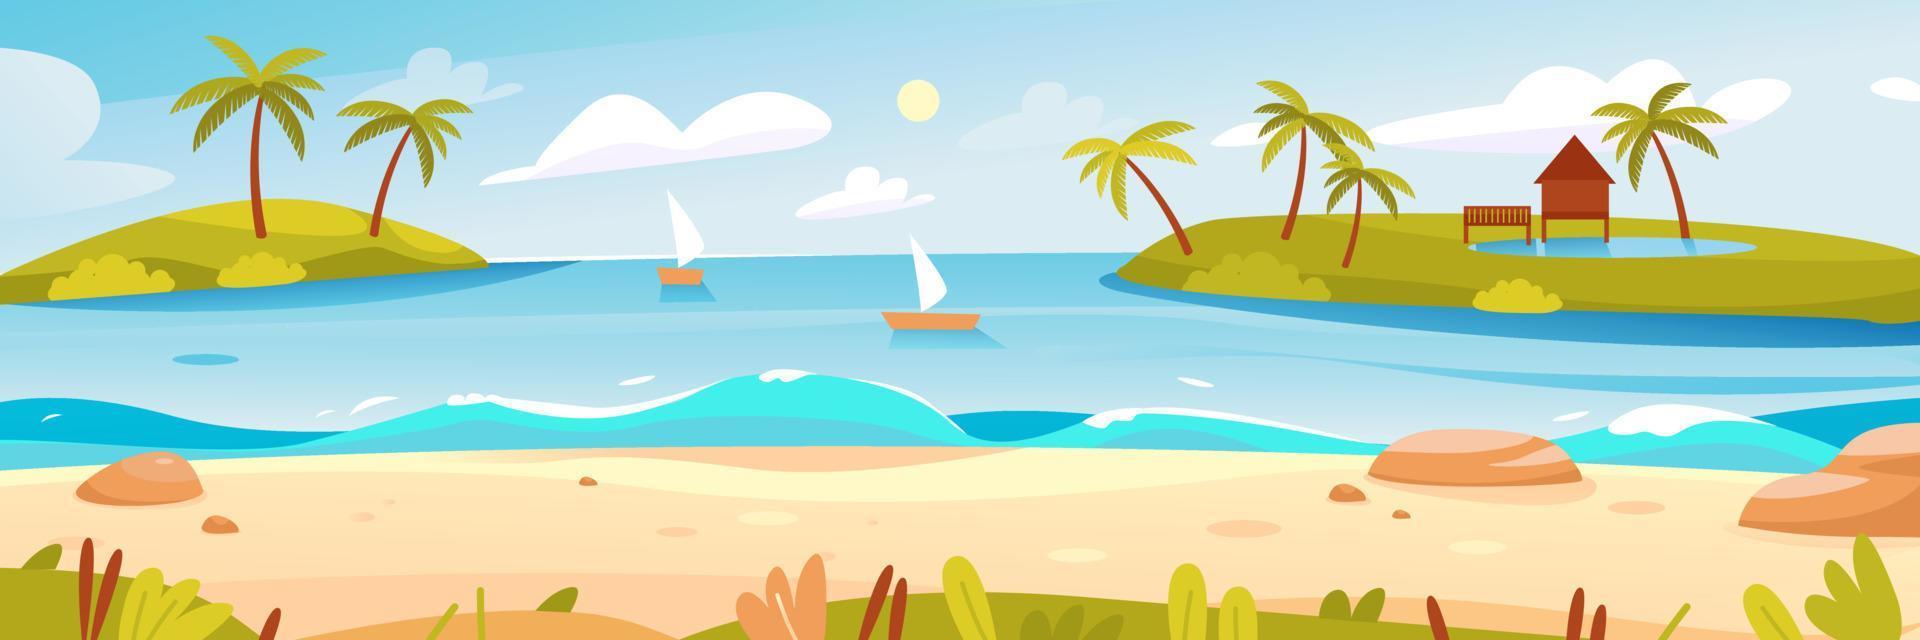 zomer strand met palmbomen aan de kust. prachtig zeegezicht. banner voor zomervakantie. de zee horizon met eilanden en boten. cartoon vectorillustratie vector